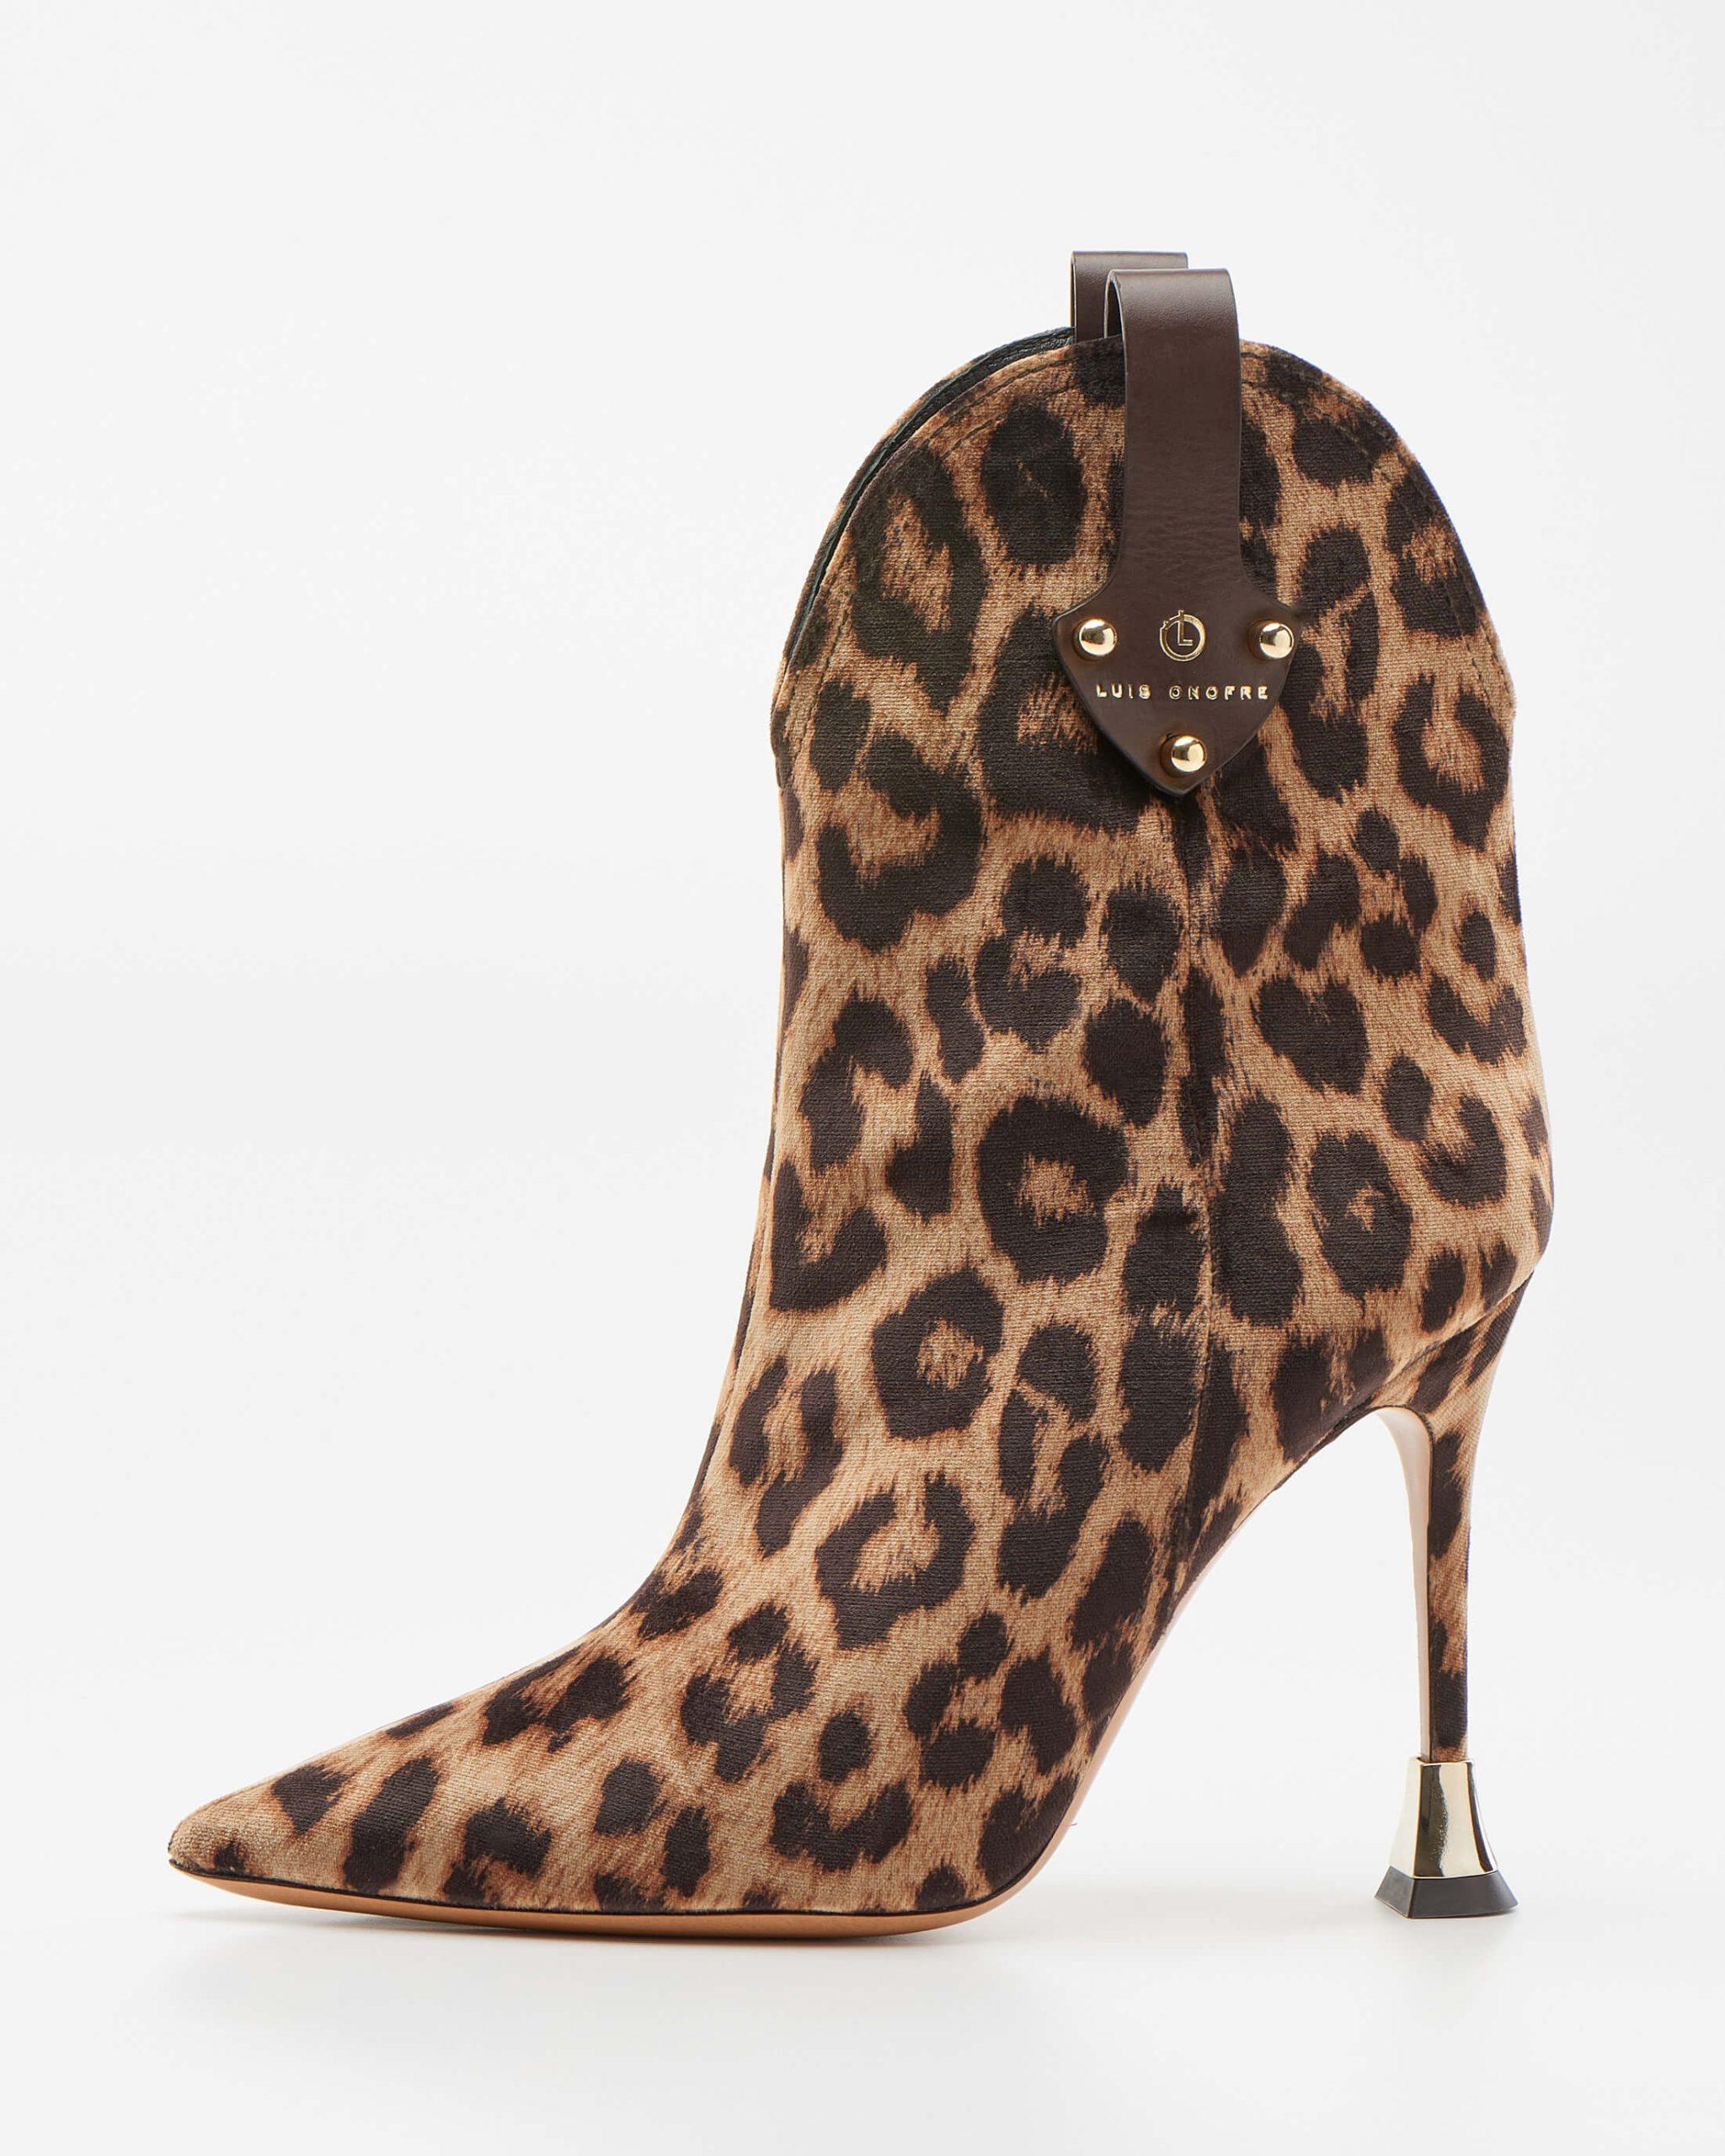 Leopard-print ankle Boots - Luis Shoes Design Portuguese Onofre 